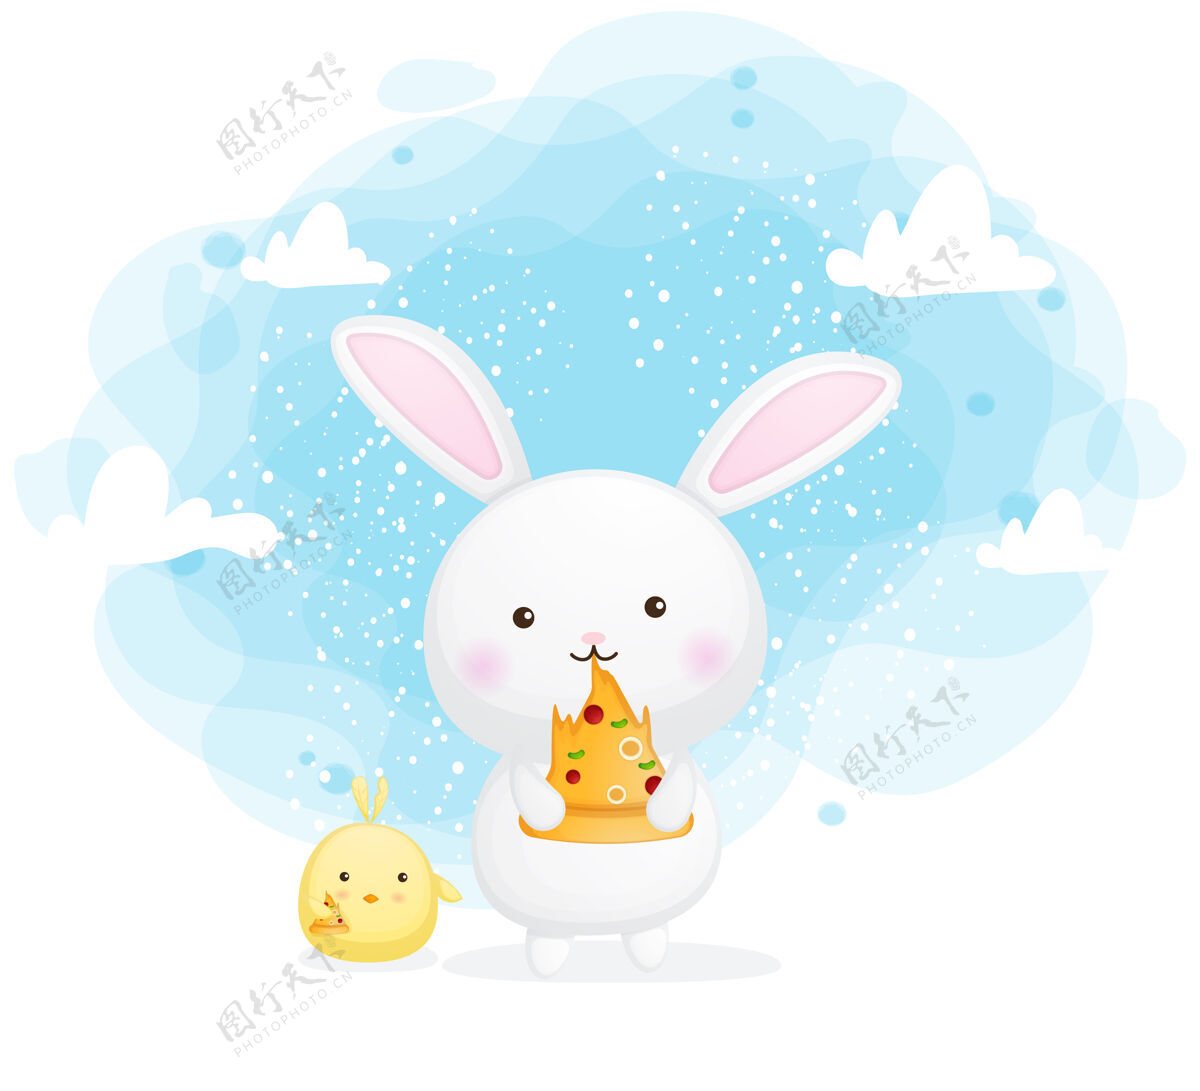 兔子快乐可爱的兔子和小鸡吃比萨饼片卡通人物比萨饼兔子云